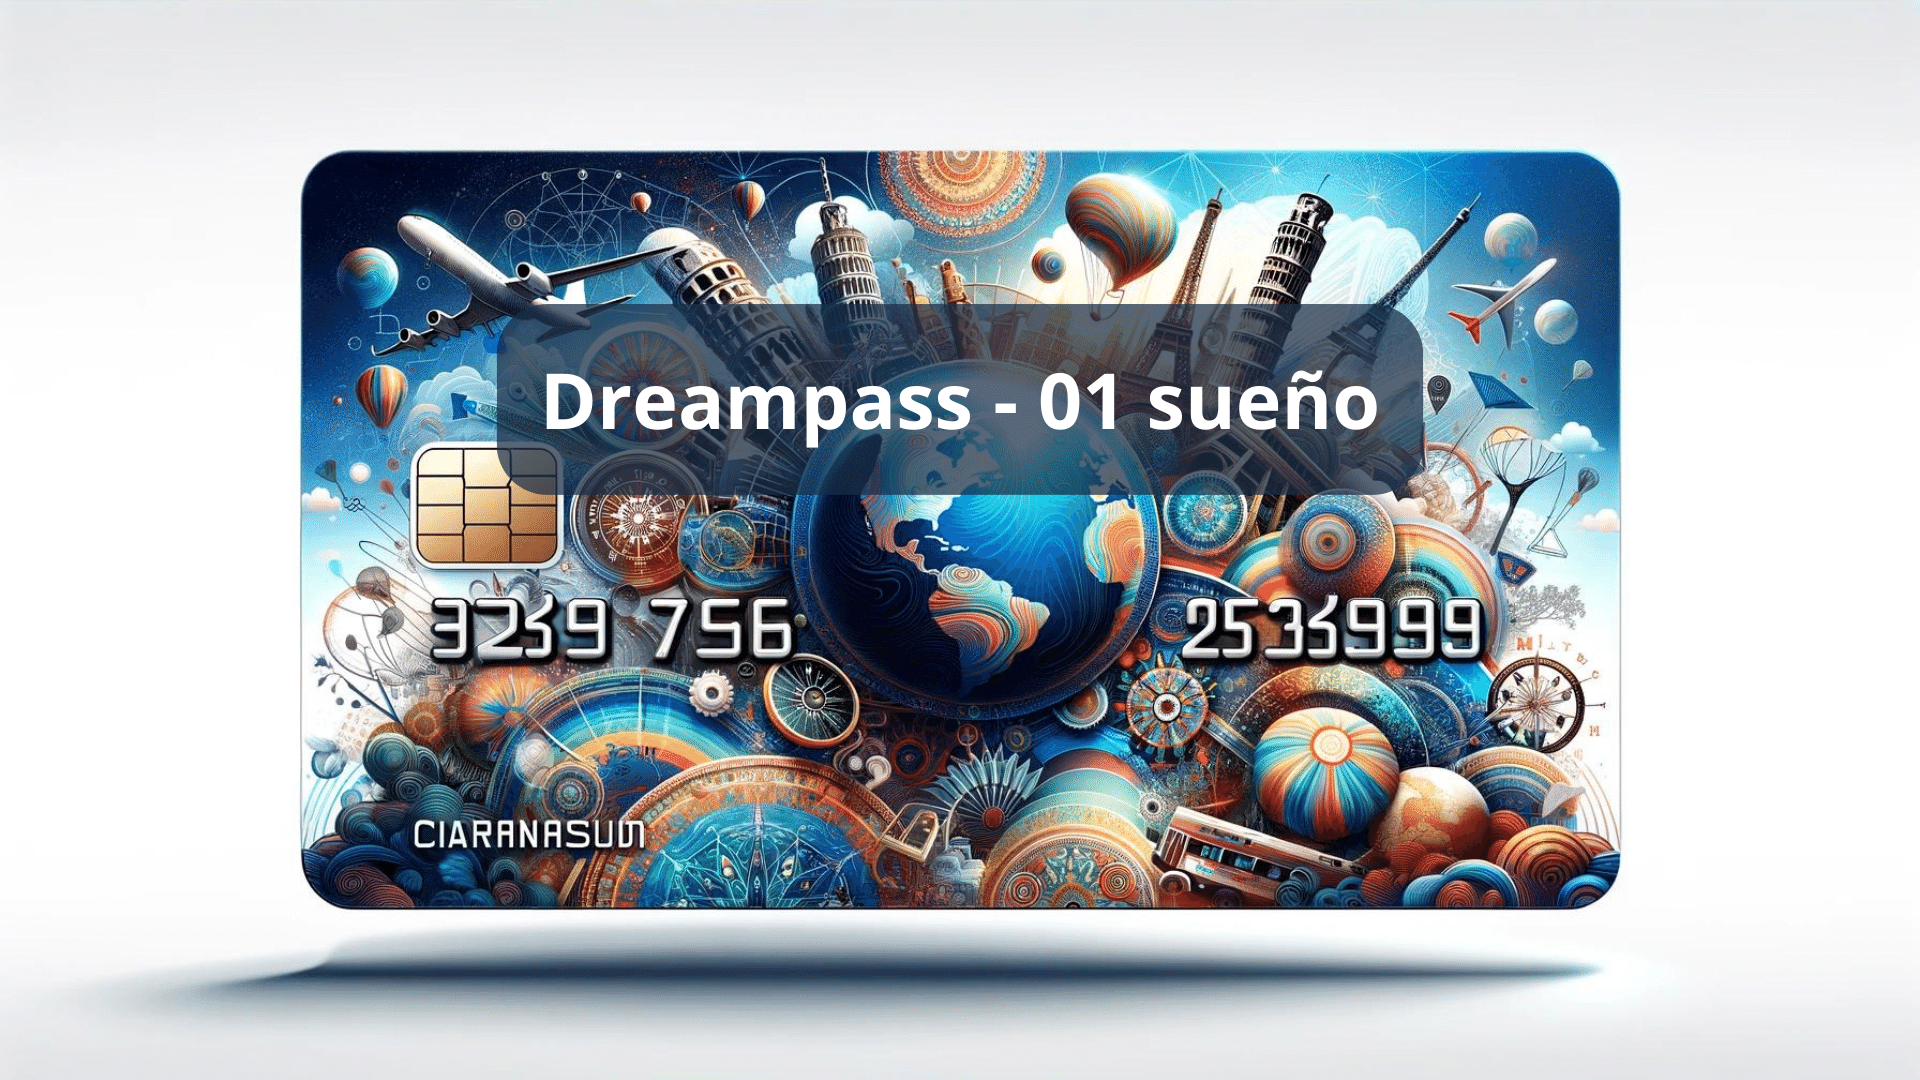 DreamPass Sueño de Mapa Travel. La membresía viajera que te permite cumplir tus sueños con descuentos para viajar por todos los servicios relacionados con un sueño viajero.